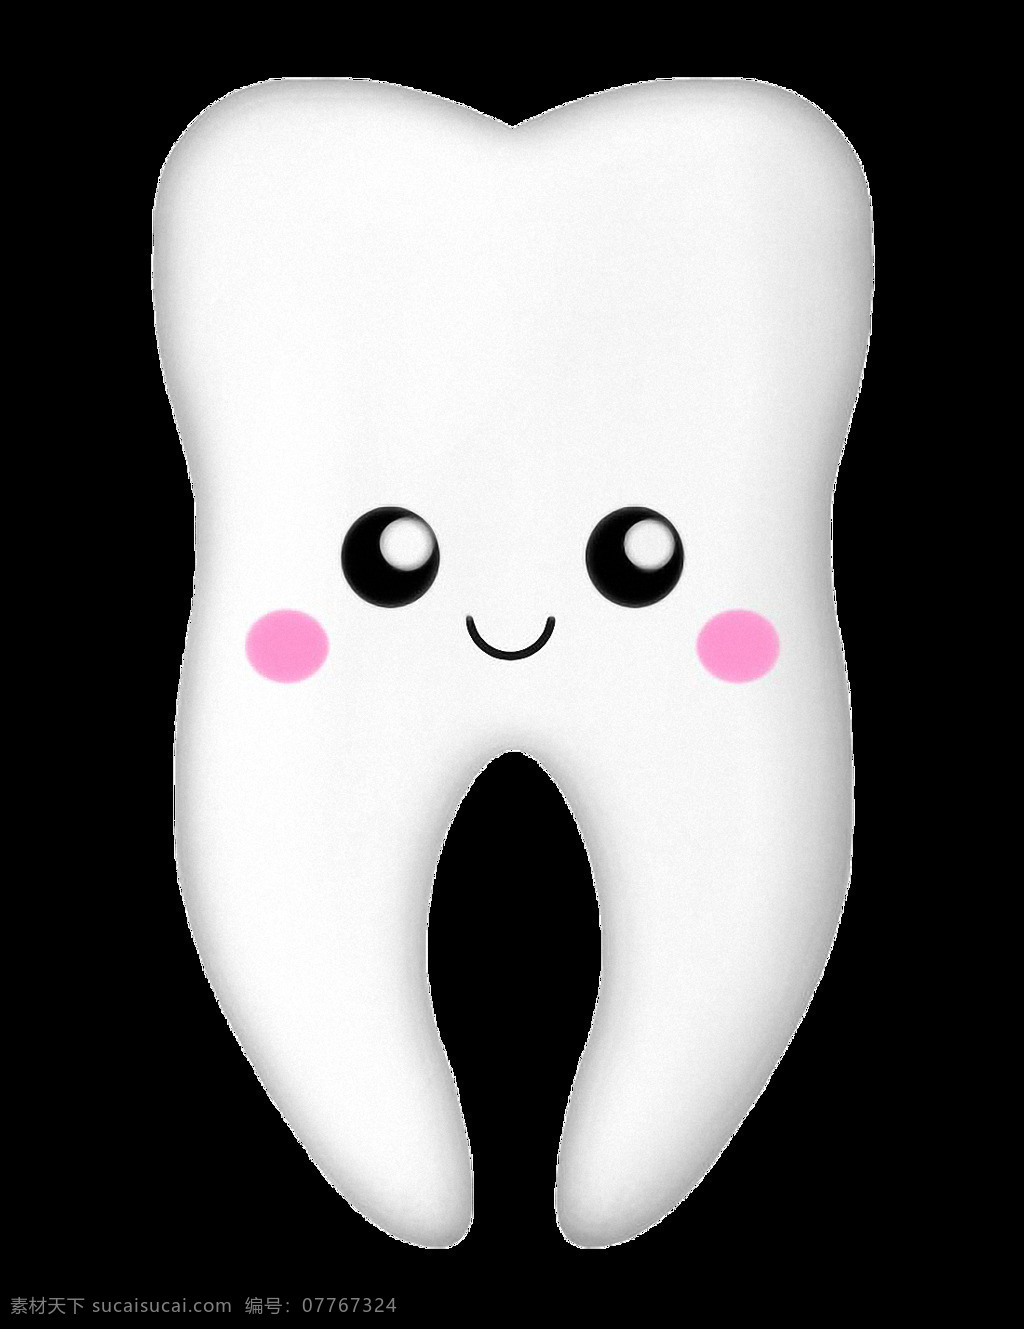 白色 卡通 牙齿 免 抠 透明 图 层 白色卡通牙齿 牙齿美容 牙齿模特 清洁牙齿 牙齿美白 美白牙齿 牙齿整形 白色牙齿 靓丽 牙科 牙齿美女 口腔 口腔健康 牙齿素材 健康口腔